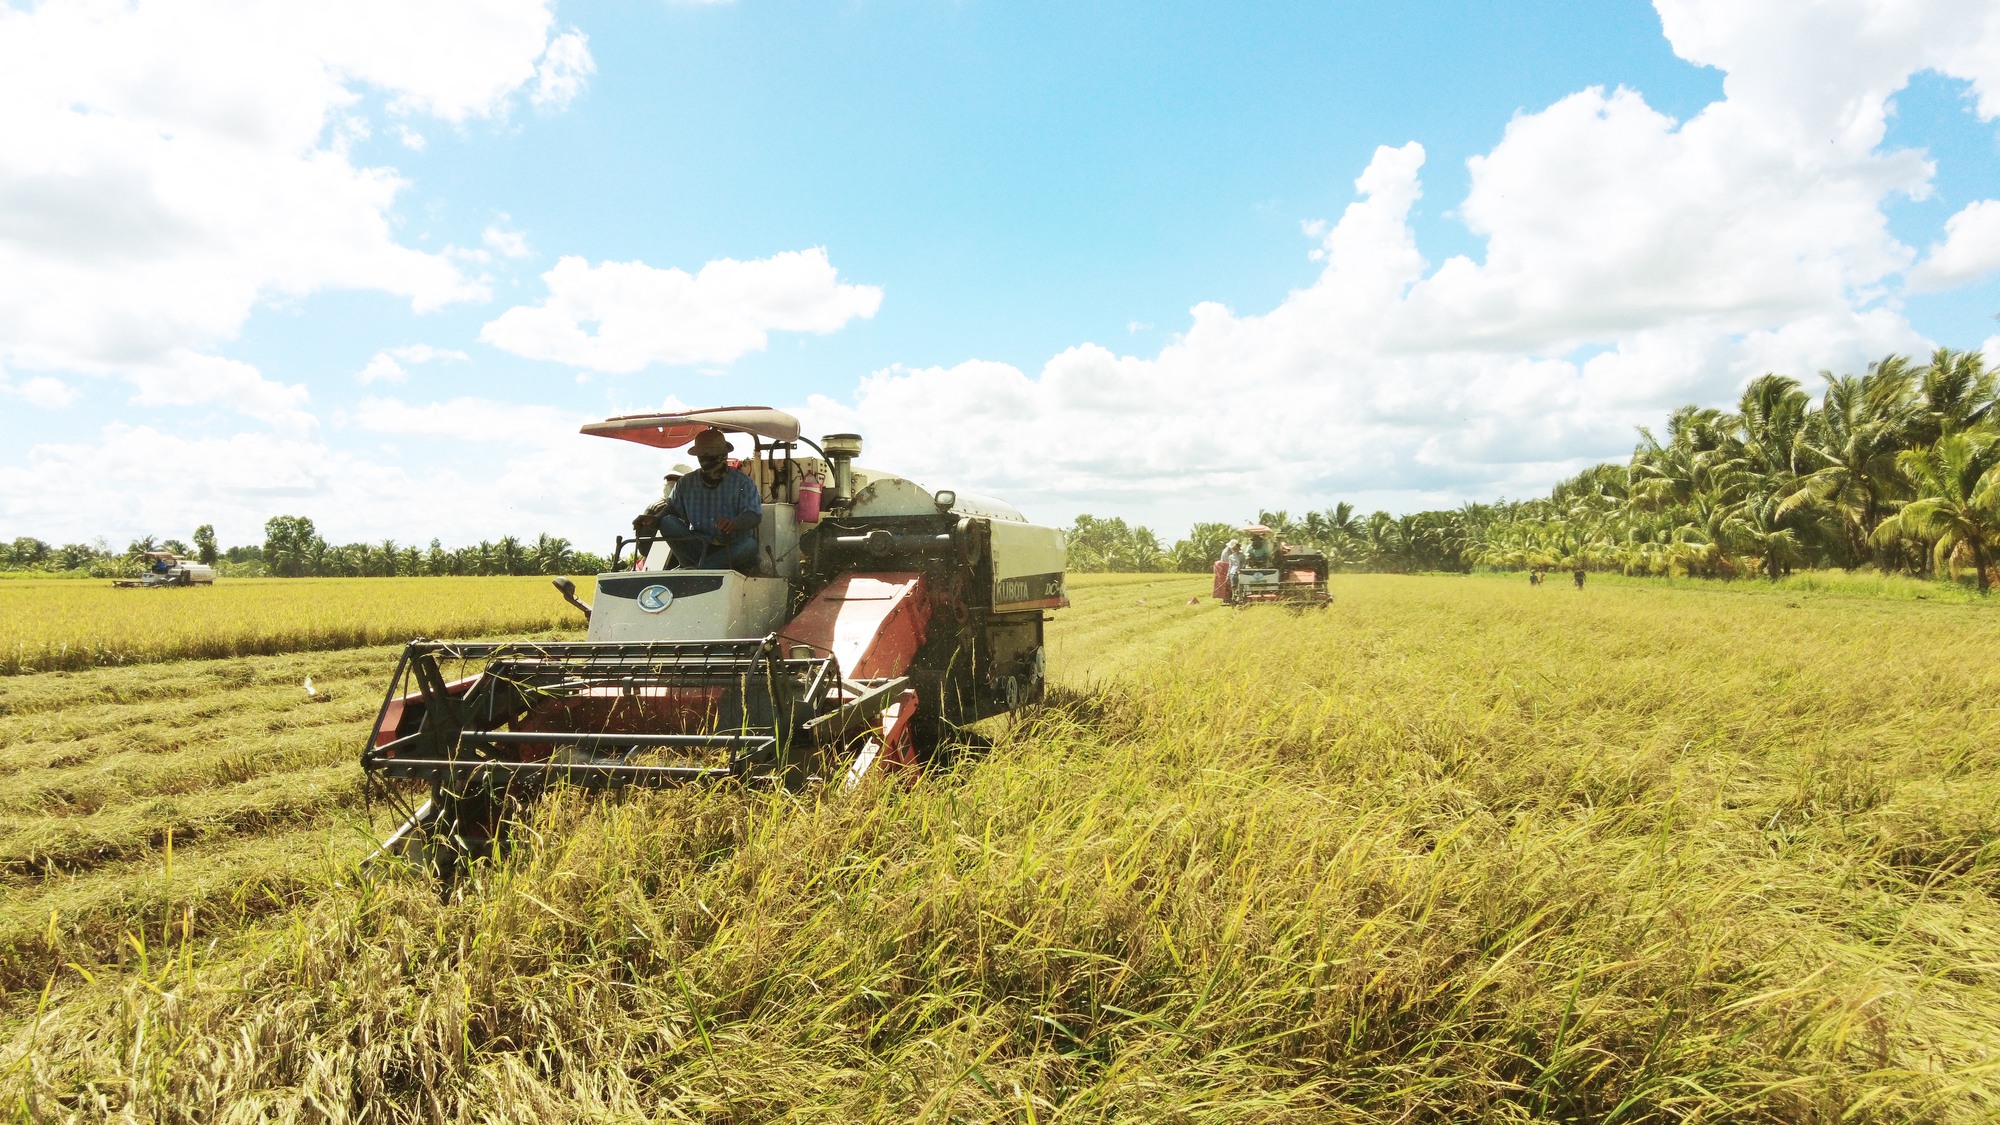 Cách để có đến 6 ha lúa và sắm 10 máy gặt đập liên hợp ở Trà Vinh của Nông dân xuất sắc 2023  - Ảnh 2.